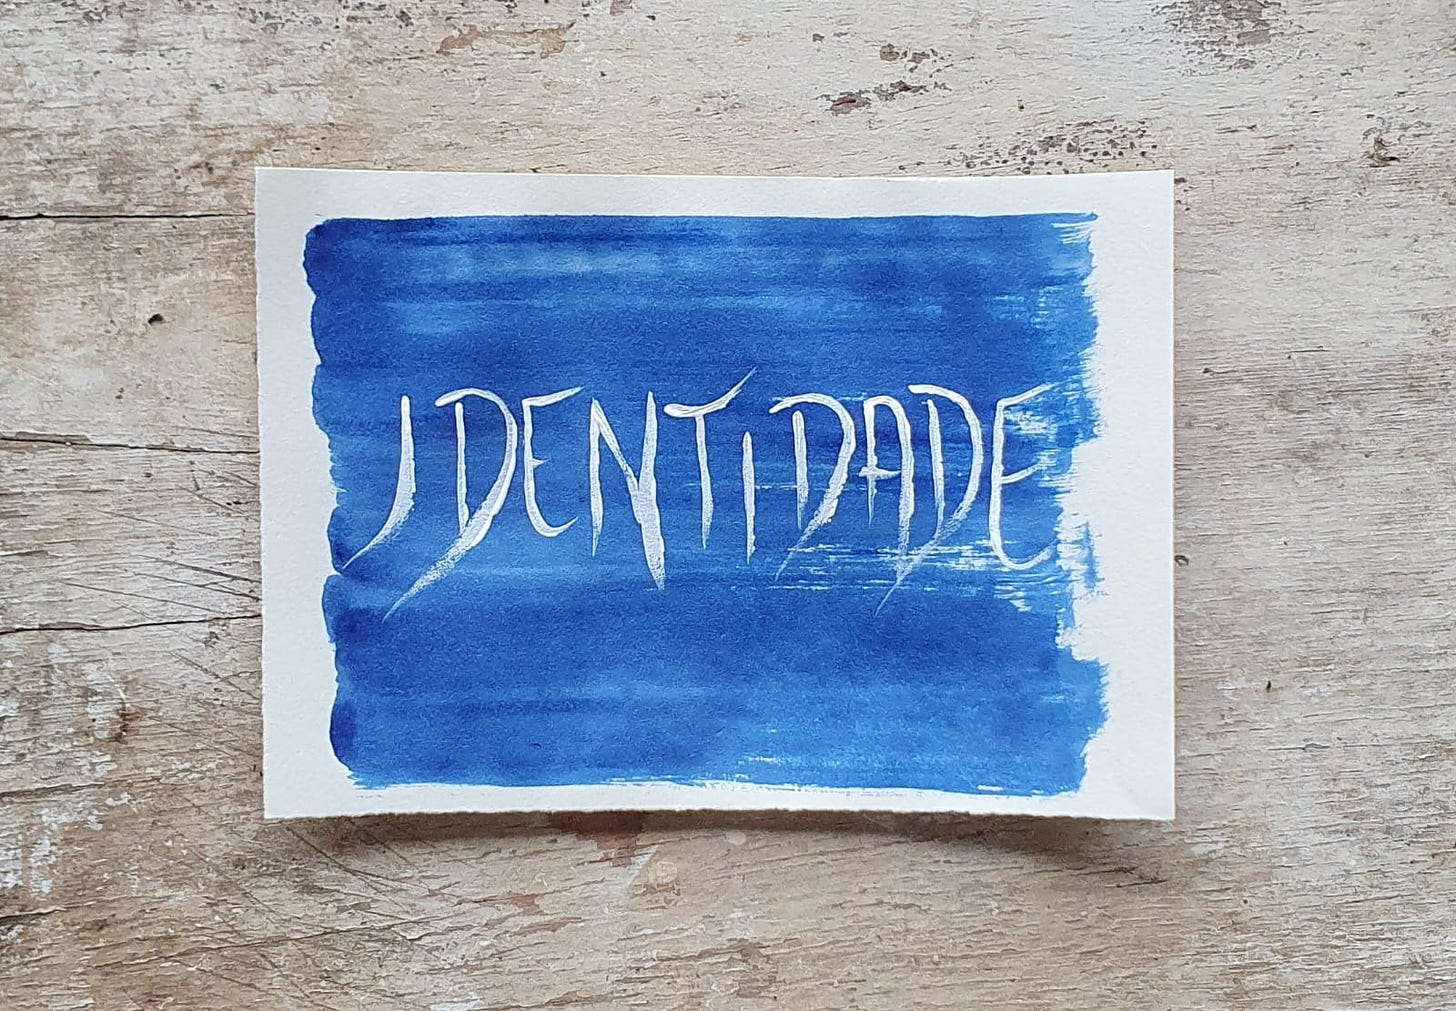 Fotografia de um papel pintado de azul escuro, com a palavra "Identidade" escrita, sobre um fundo de madeira 